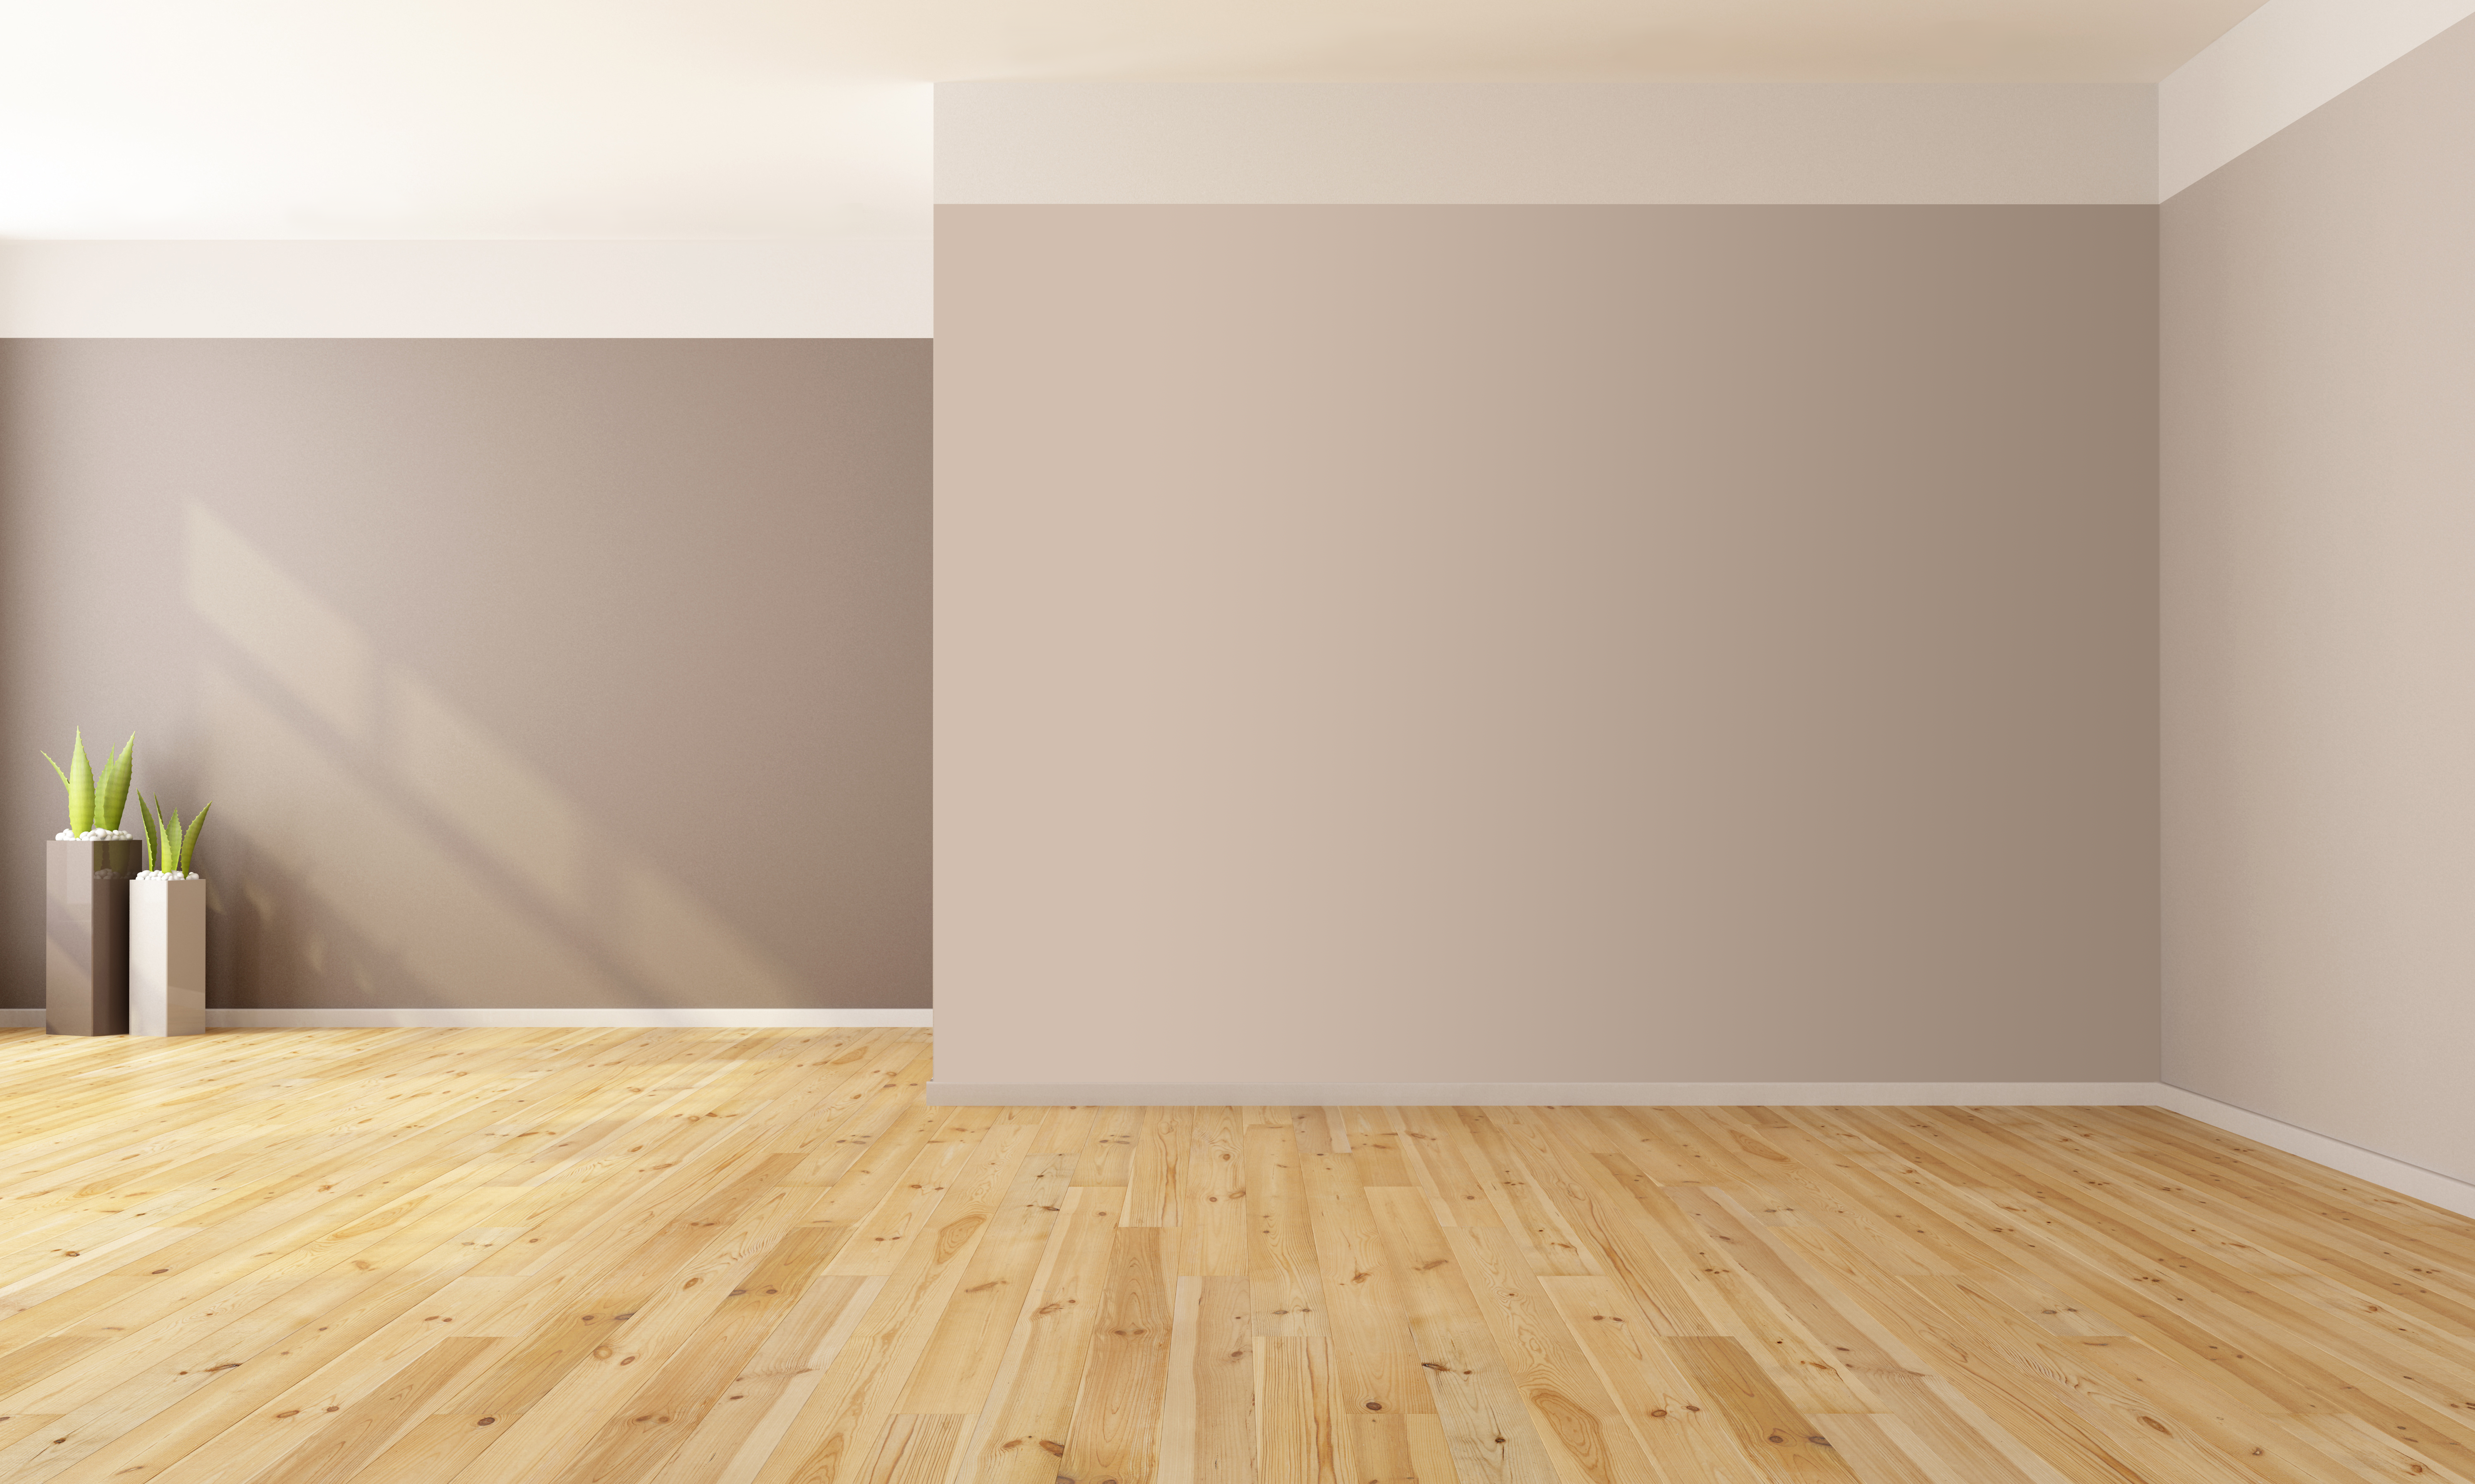 Empty Room - Bedroom - Light Brown Floor by Quryous on DeviantArt